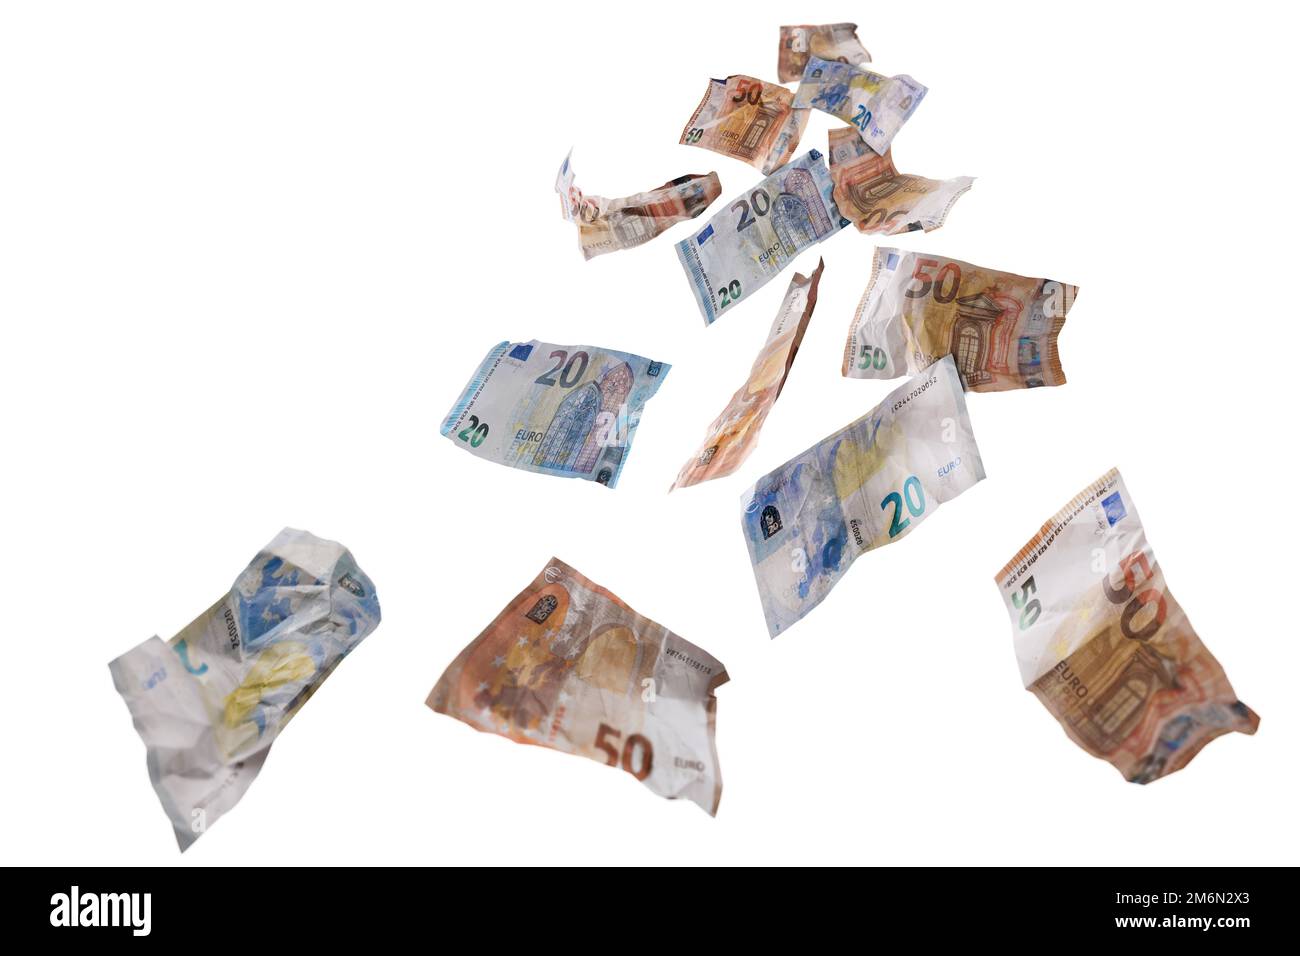 Fünfzig und zwanzig Papierbanknoten in Euro-Währung fliegen nach unten, Geldkonzept für glückliche Finanzen, Geschäftserfolg, Investitionen oder Lotteriegewinn, isoliert Stockfoto